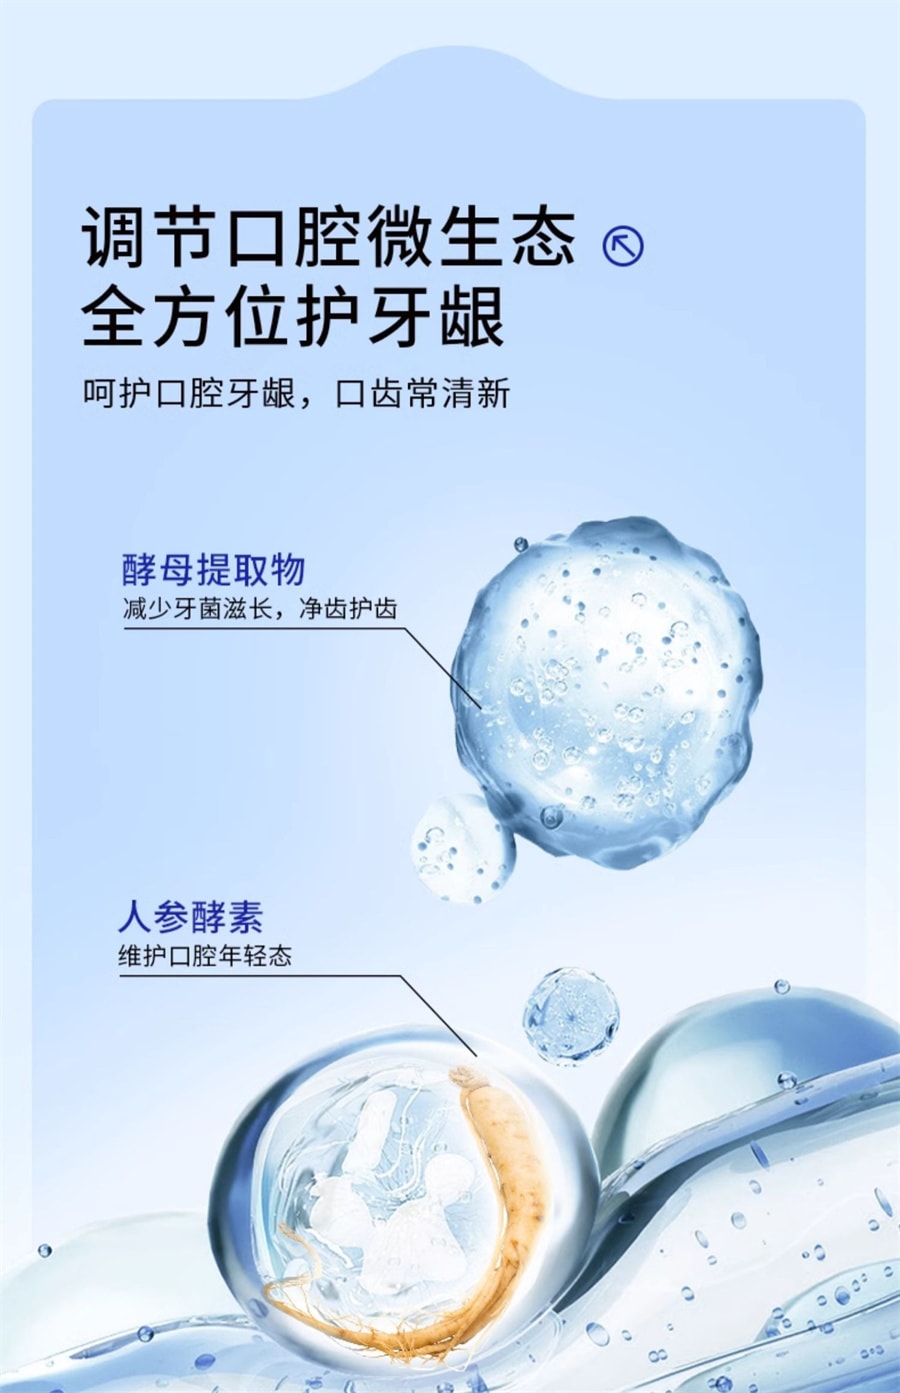 【中国直邮】EHD 洁牙粉去黄洗白减少异味牙菌斑清新口气牙渍美牙垢白 50g/盒